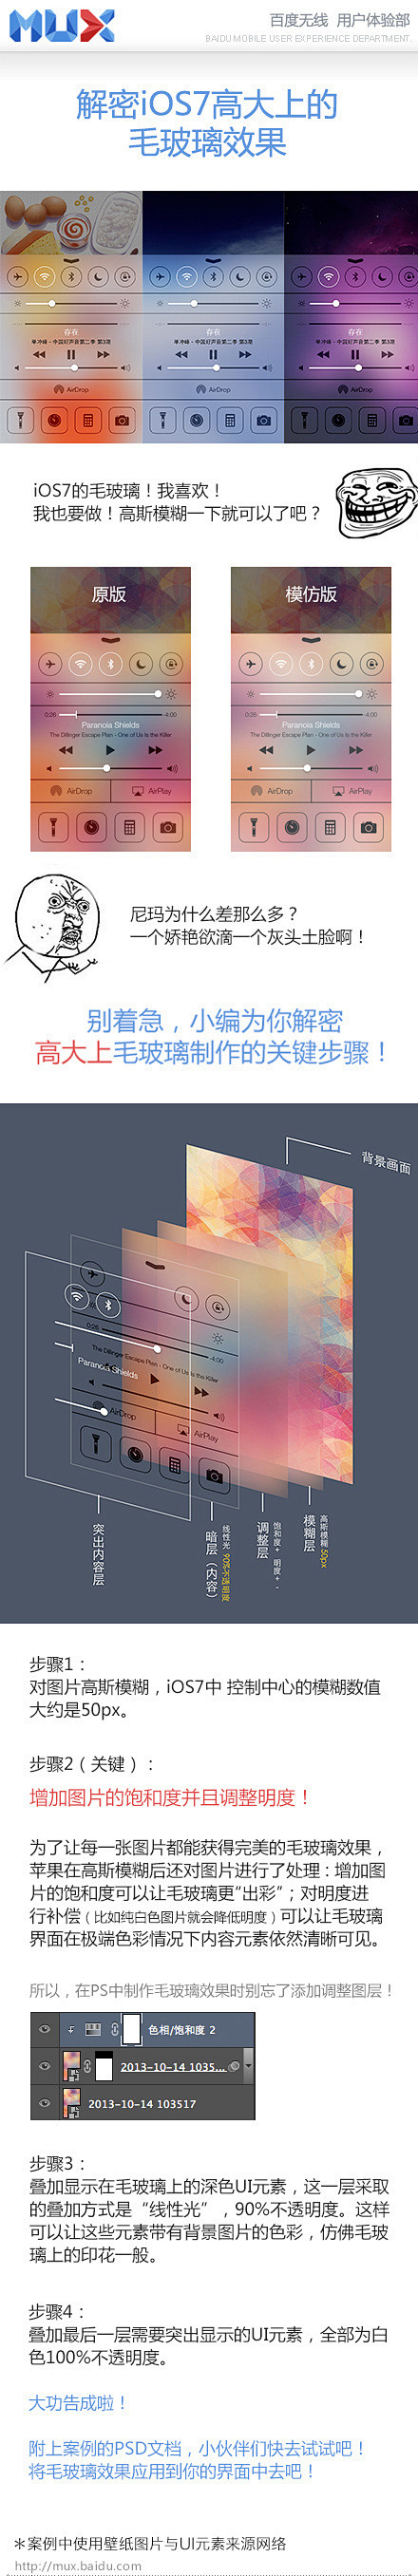 iOS7毛玻璃教程.jpg